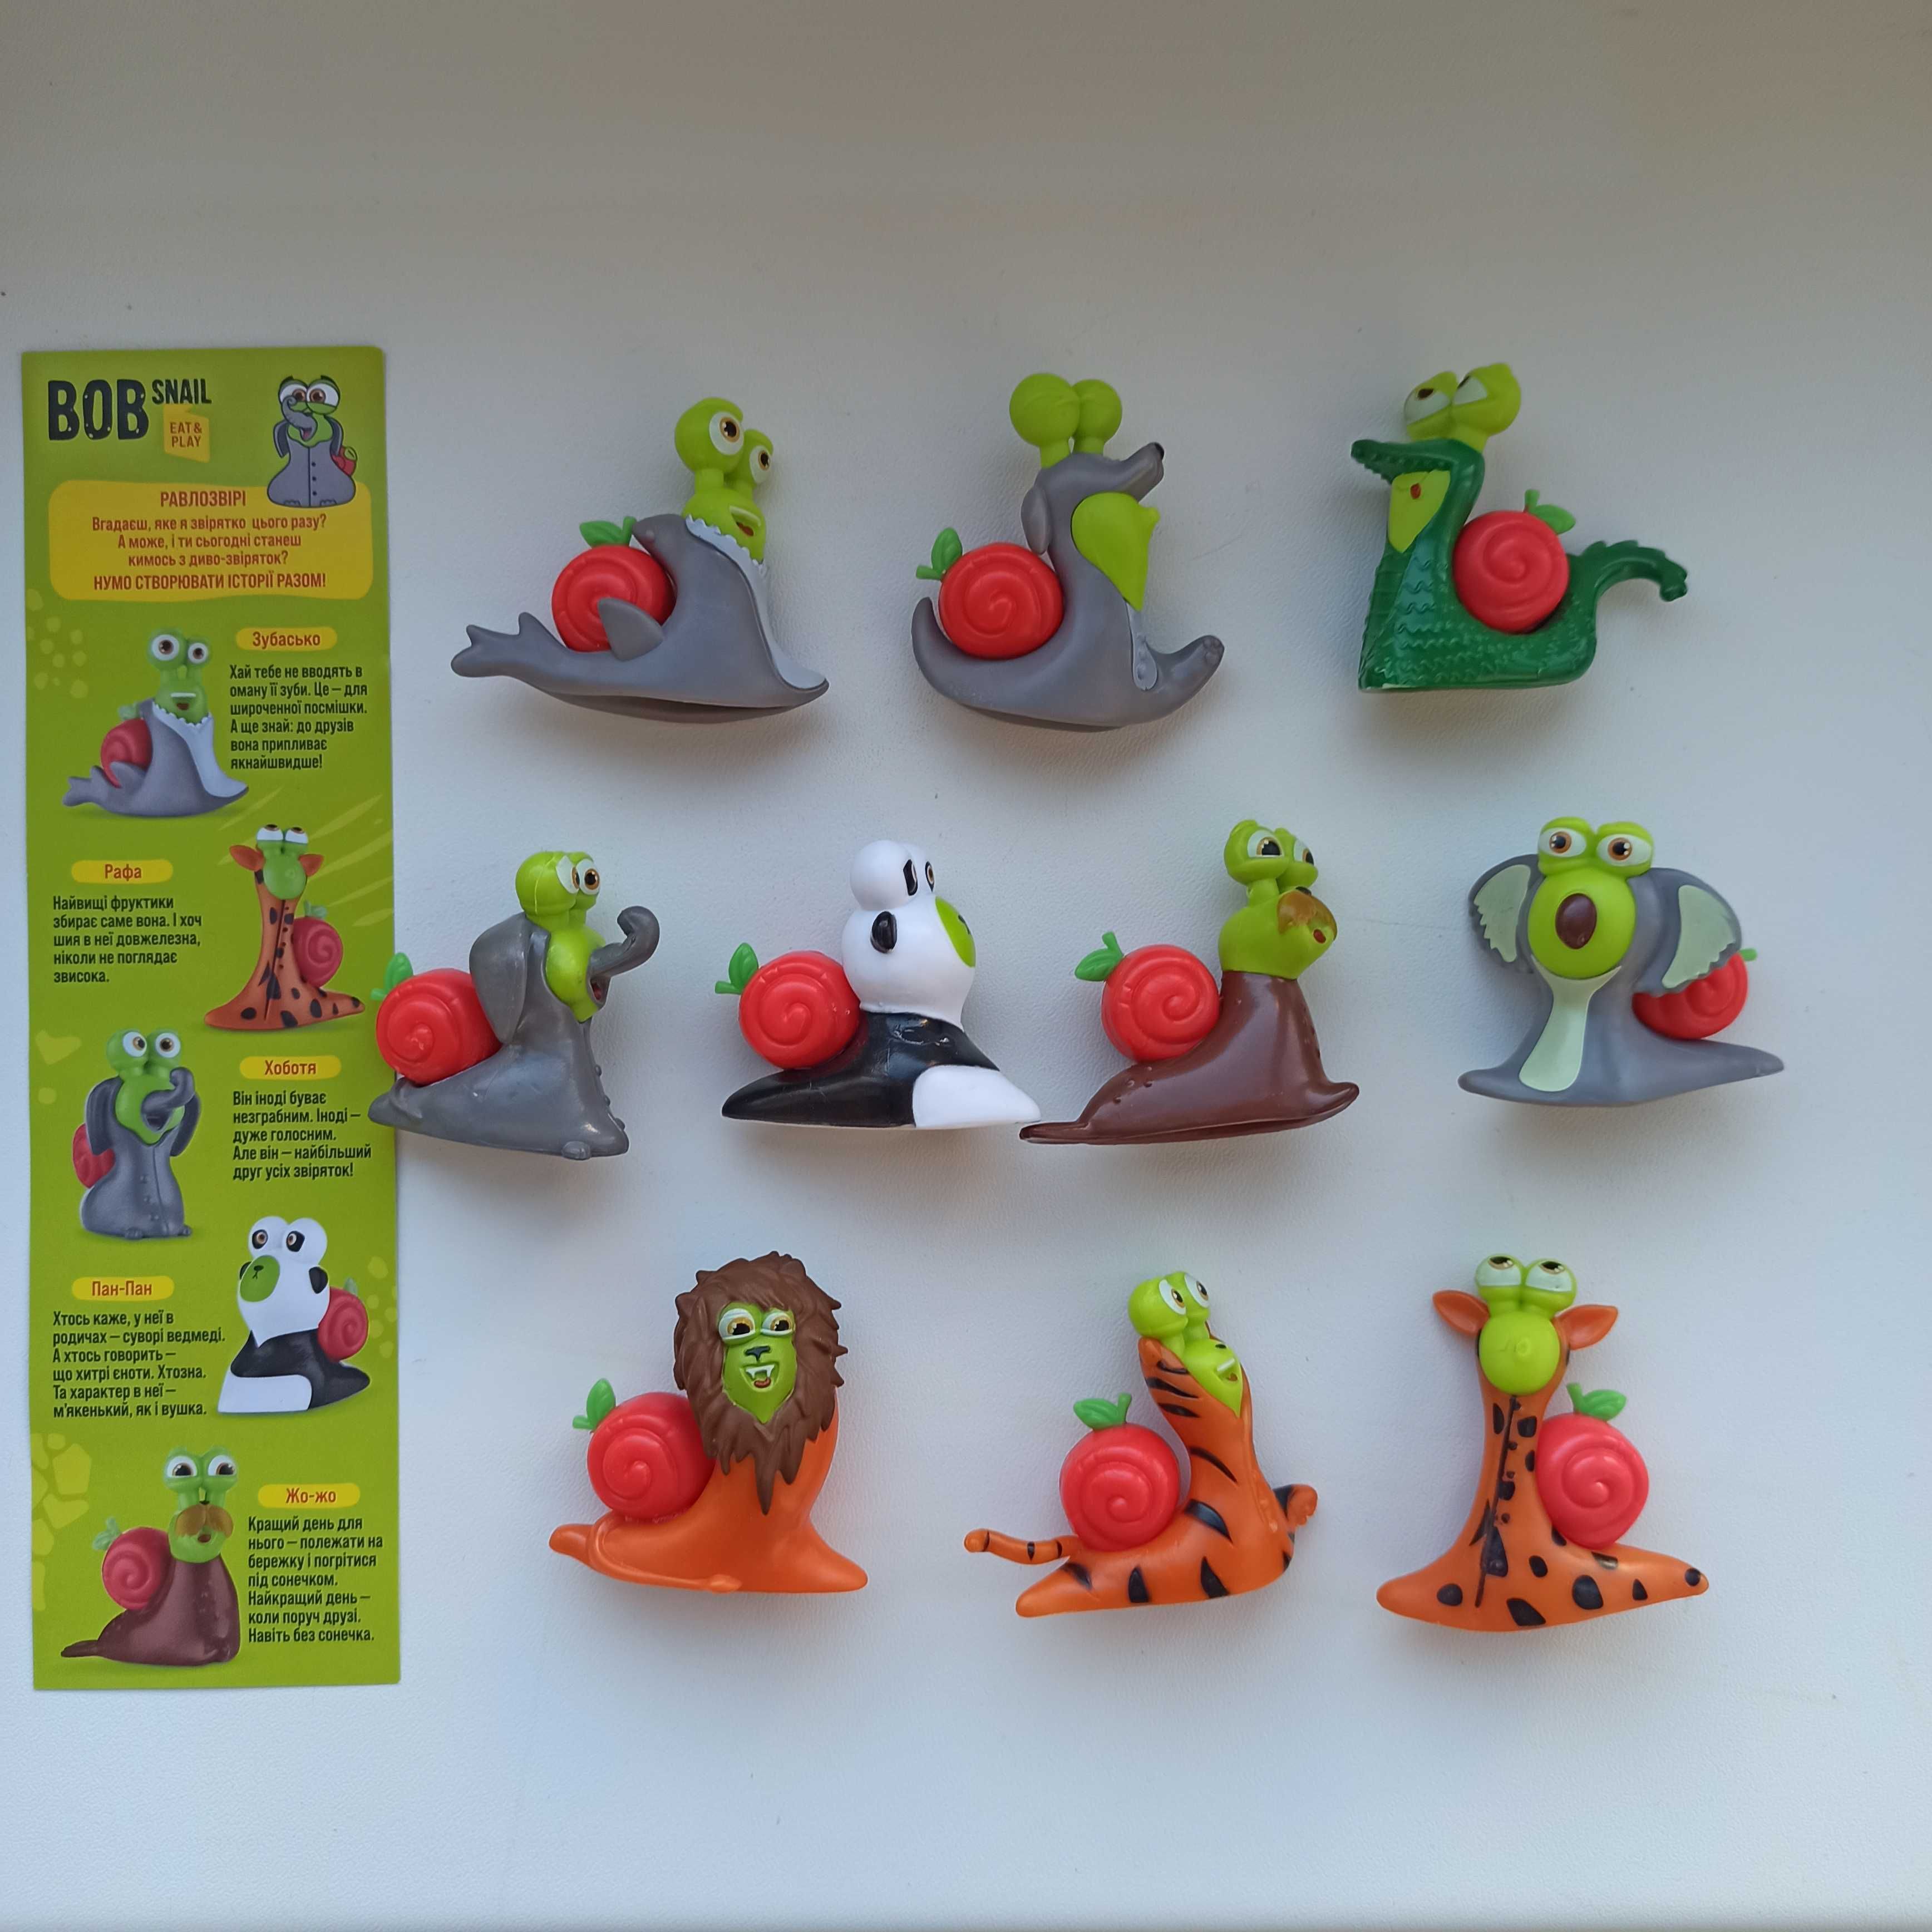 Фігурки Равлик Боб, серія Фруктові емоції Bob Snail та інші серії